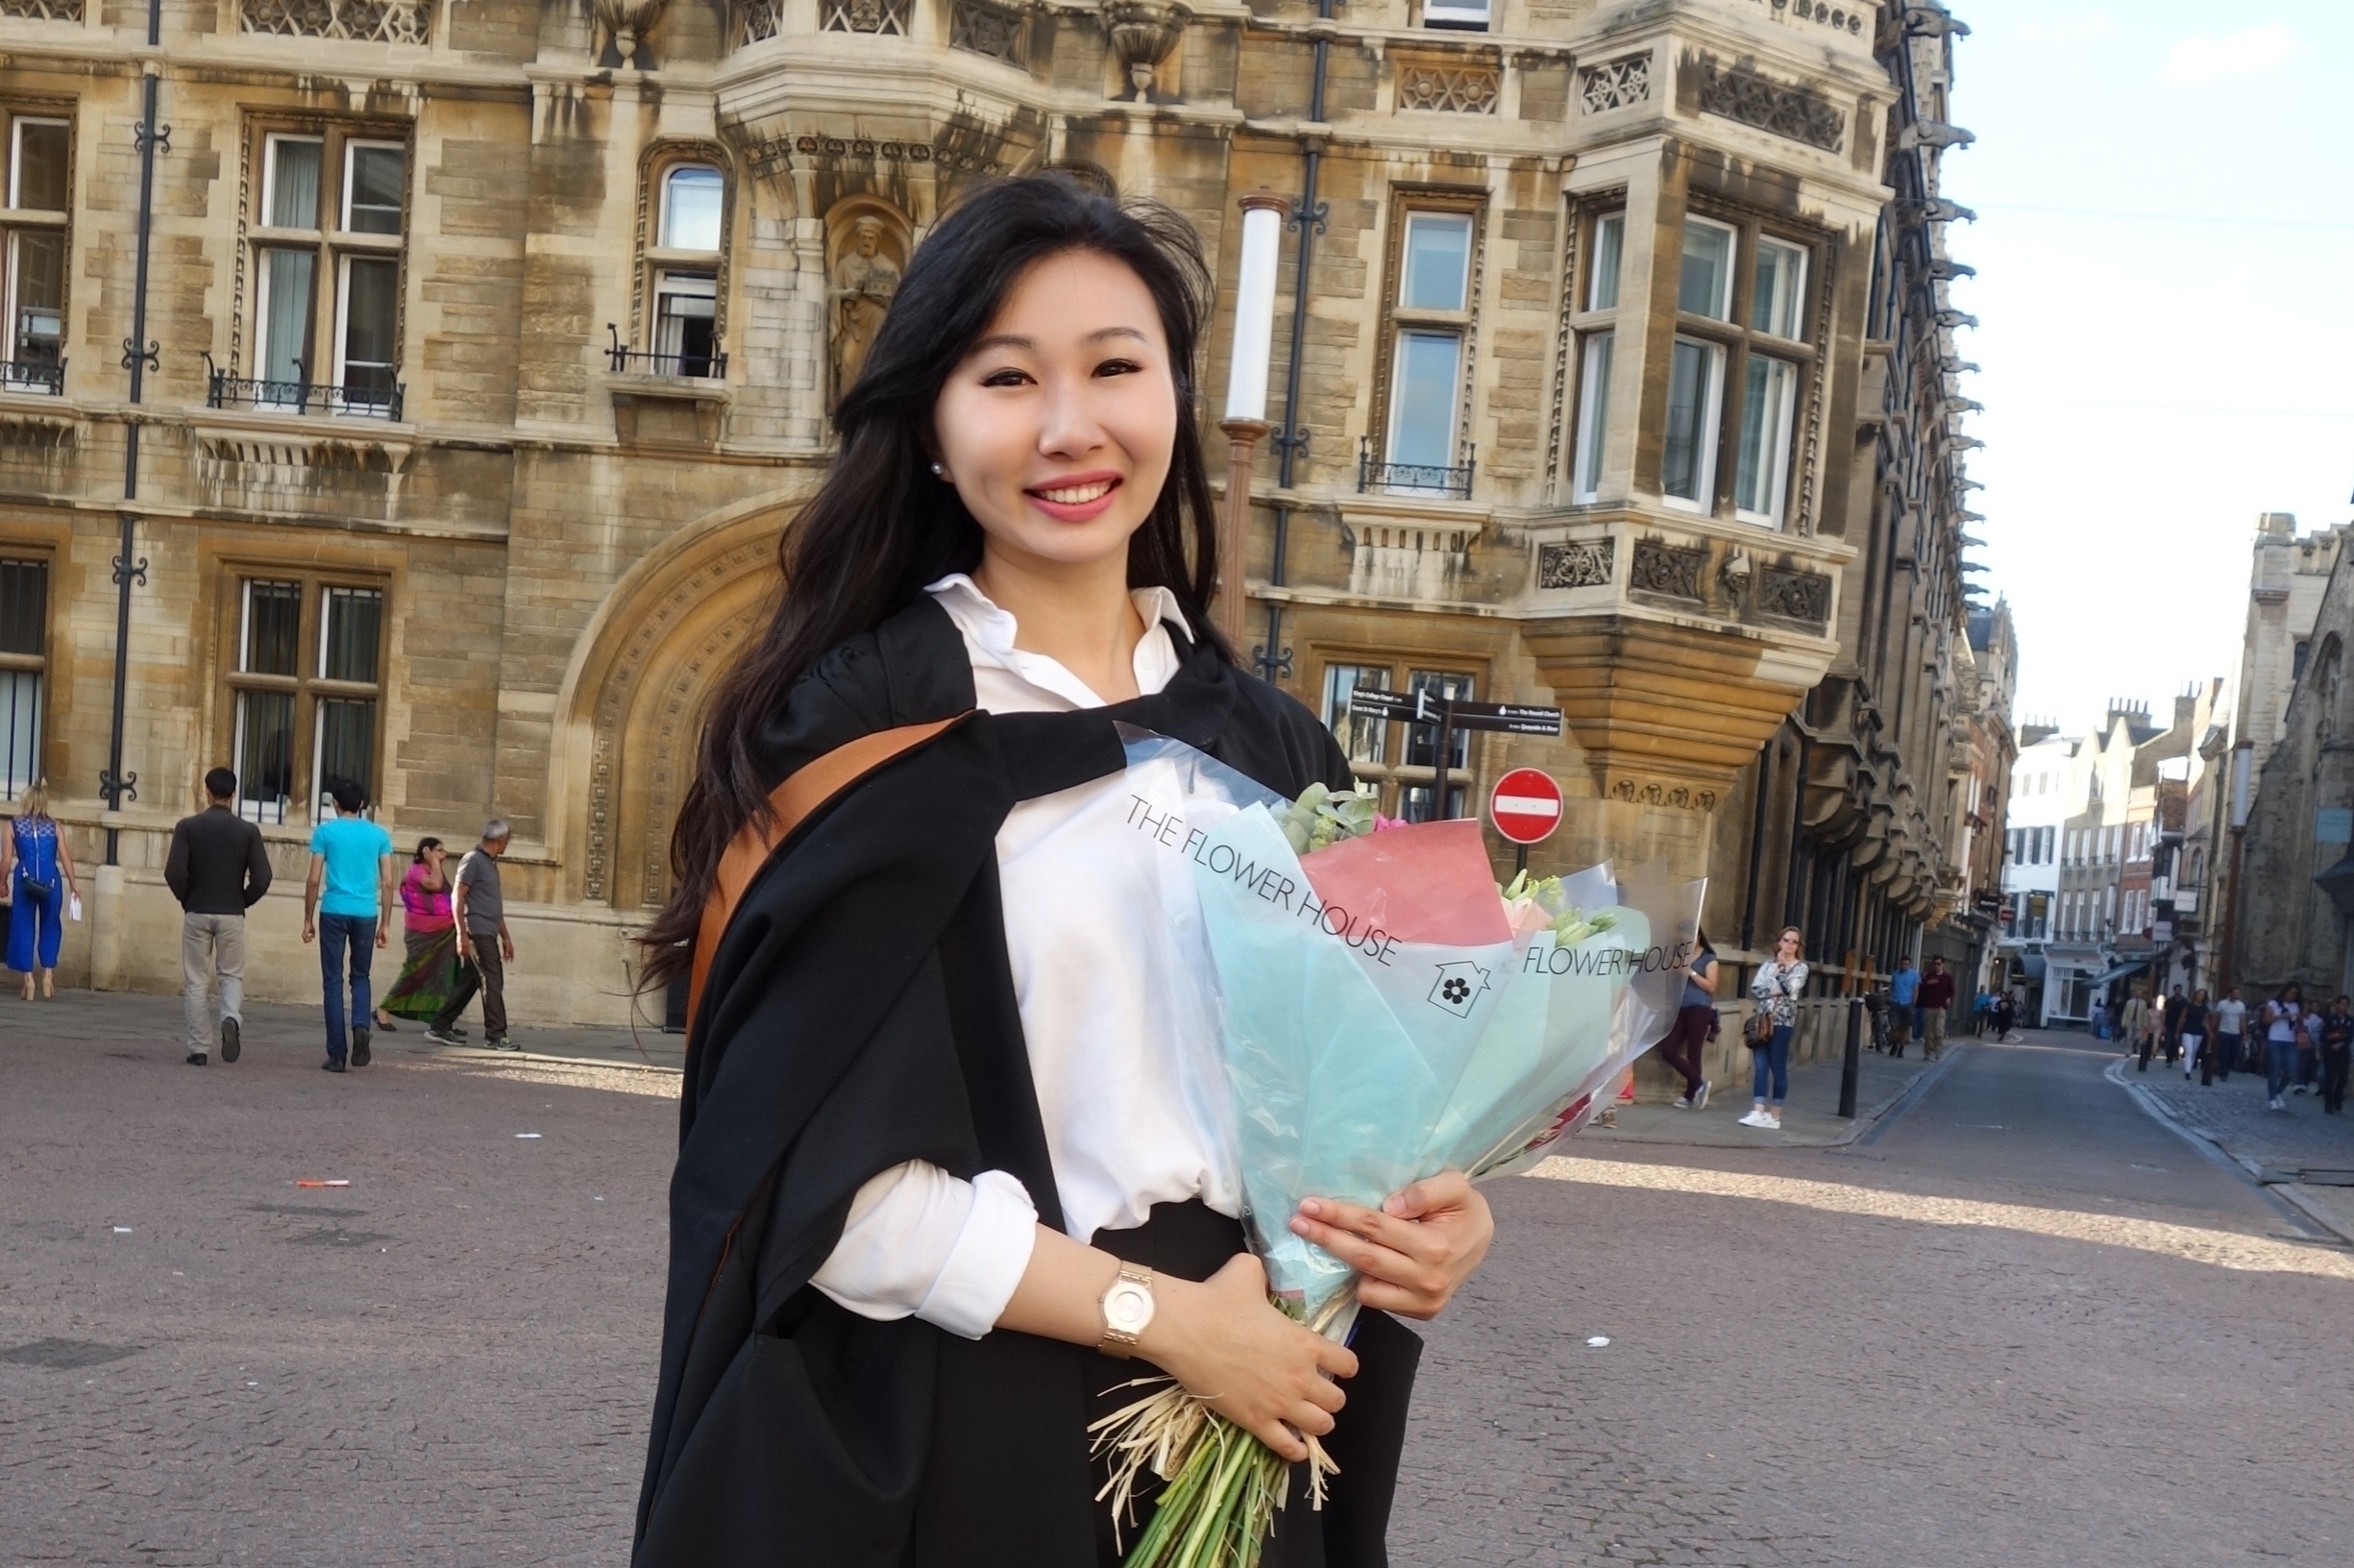 A Bank Negara Malaysia scholar's inspiring journey to Cambridge